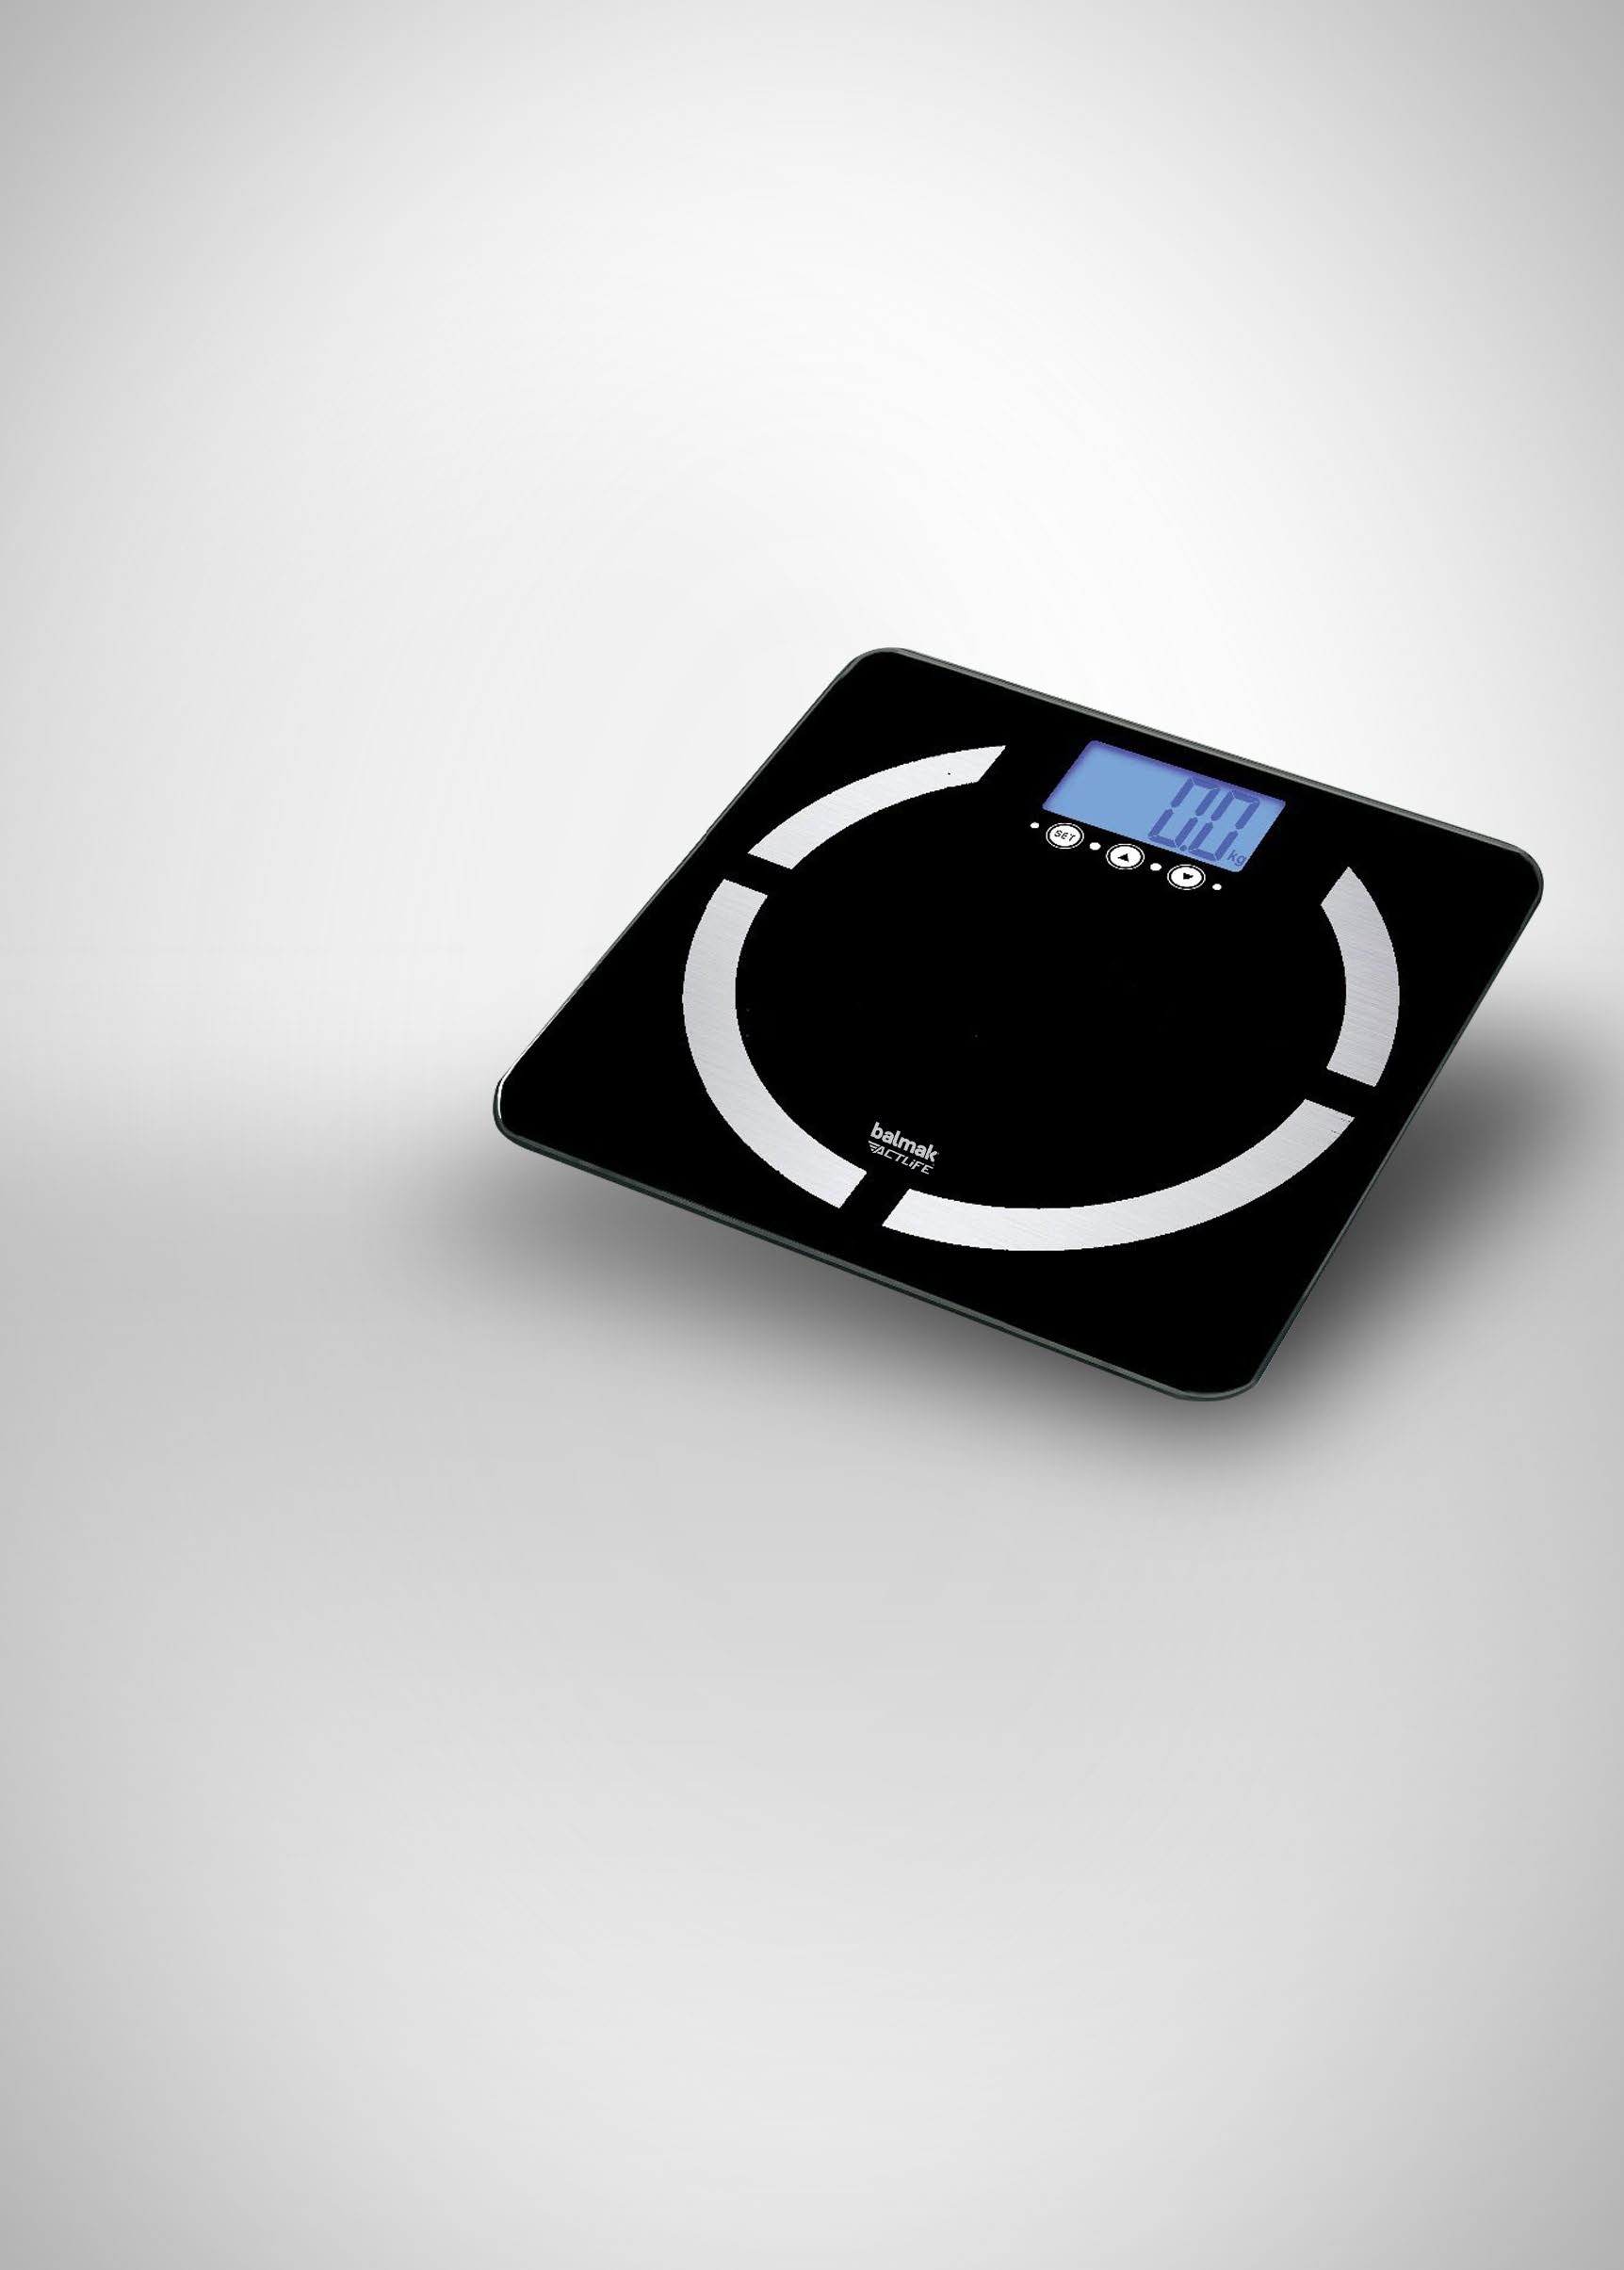 SLIMTOP-180 Balança digital de análise corporal, para pesagem e medição do percentual de Gordura, Massa Muscular, Massa Óssea e Água